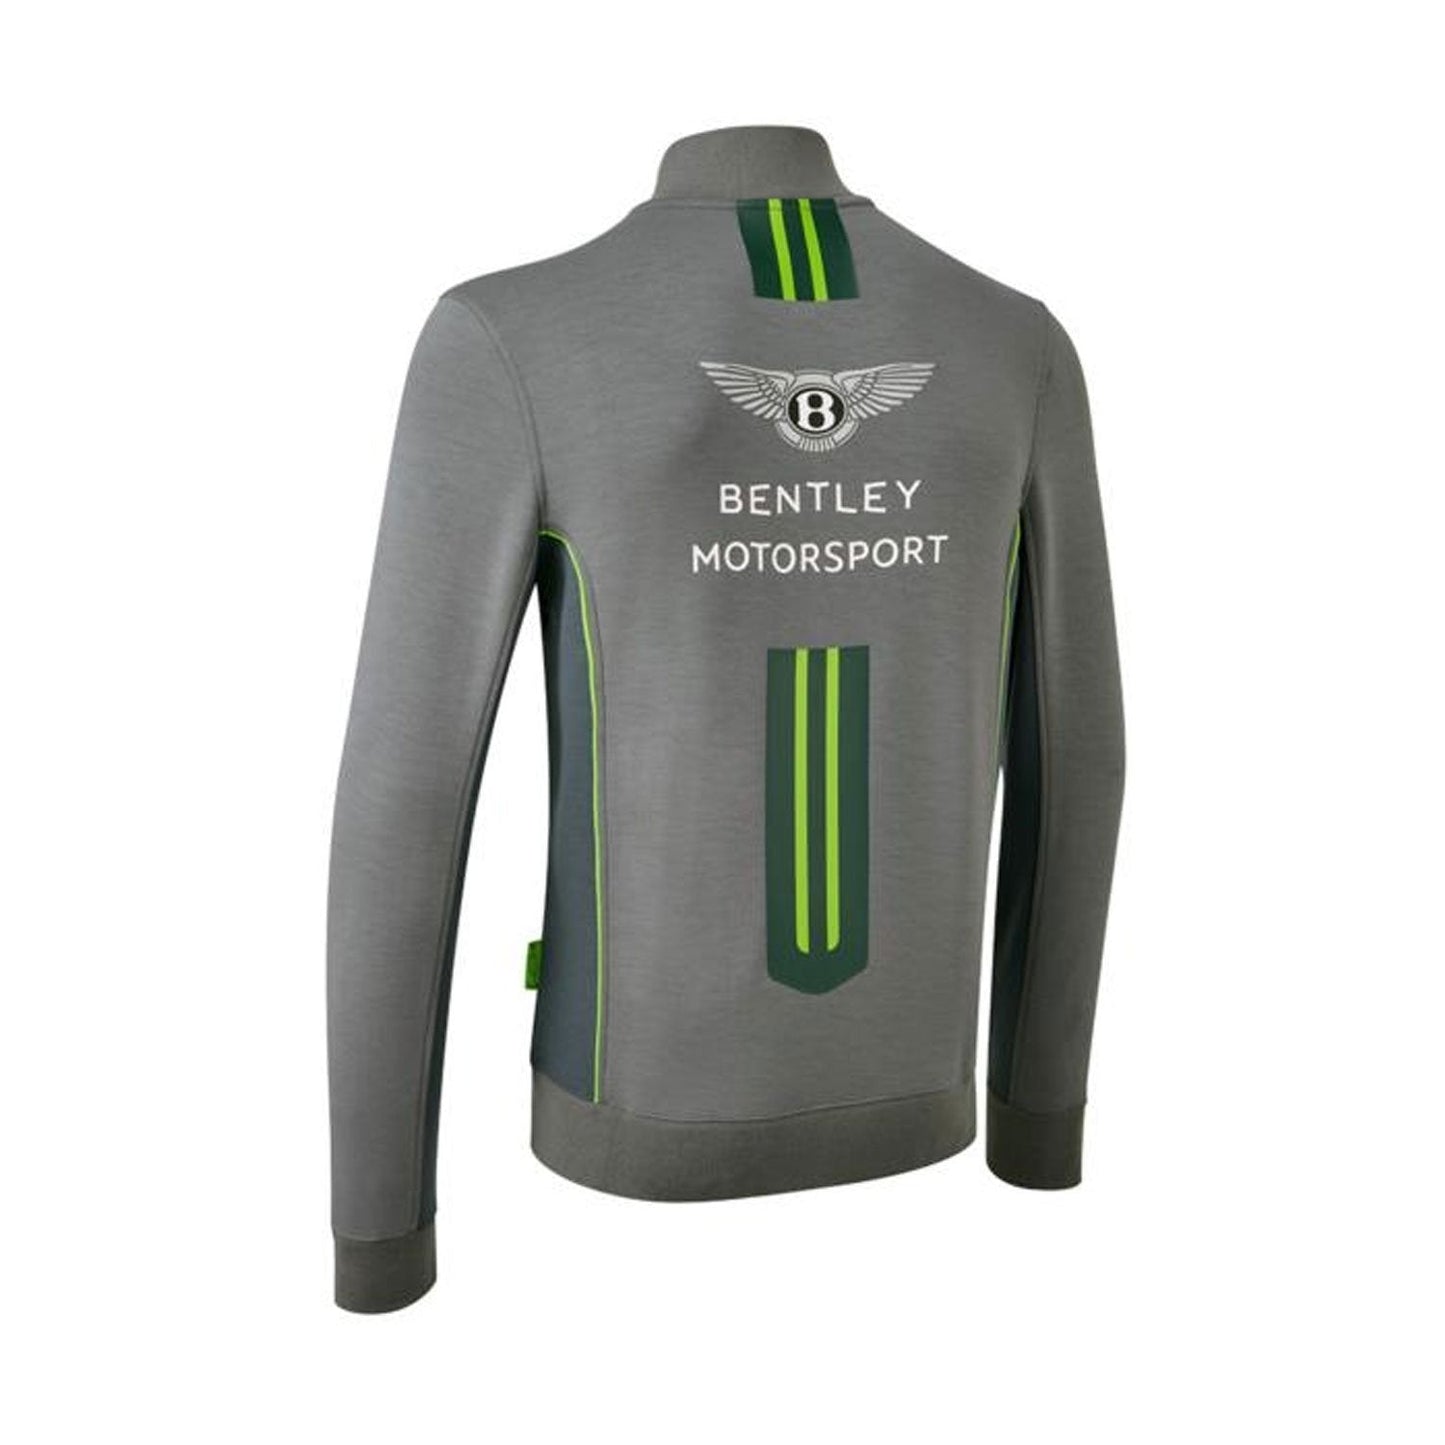 Bentley Motorsport Mens Team zip-up sweatshirt